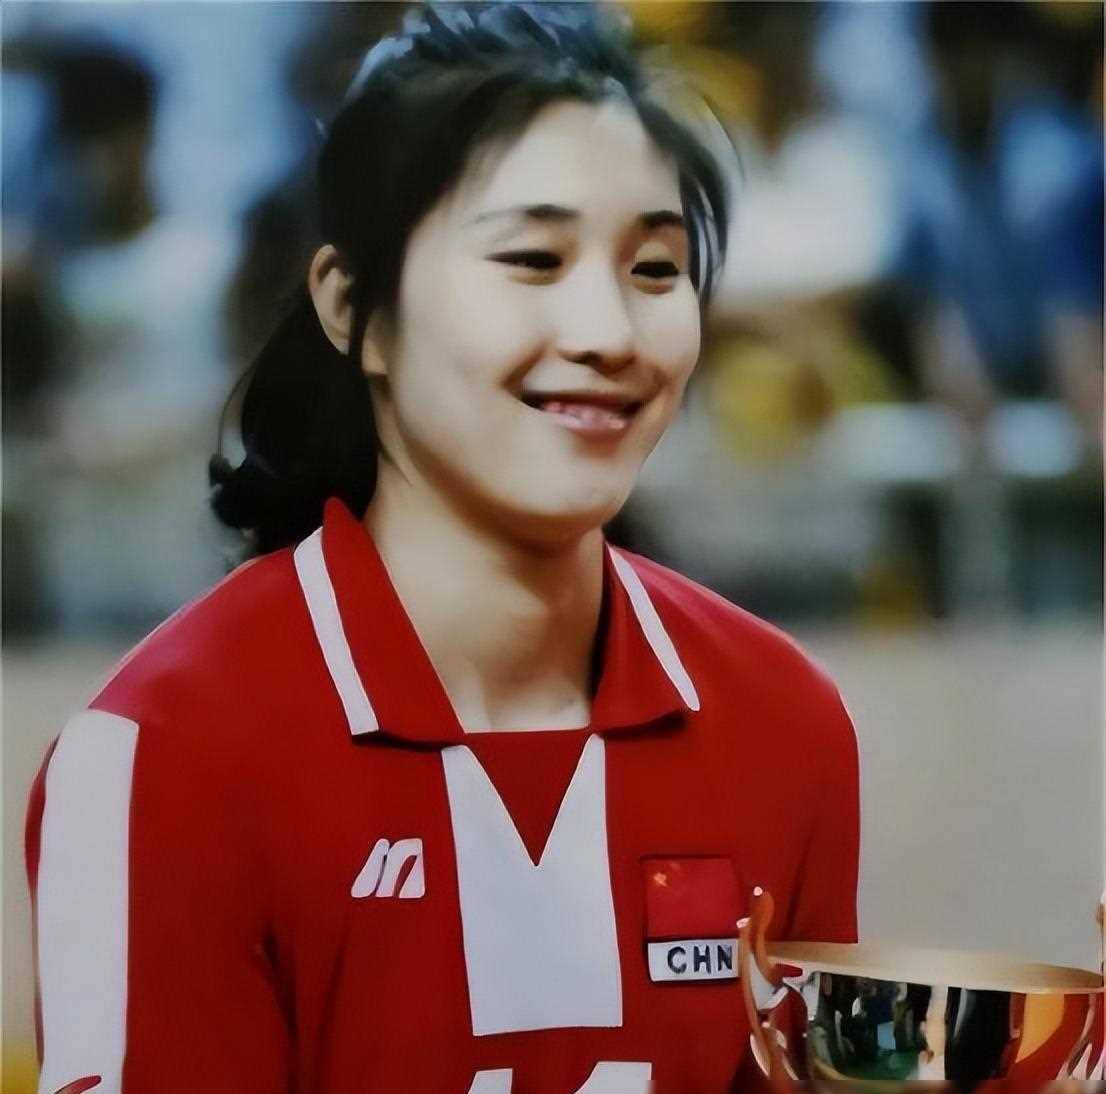 年轻时的孙玥,拥有着天赋和努力,她从小就展现出对排球的热爱和天赋